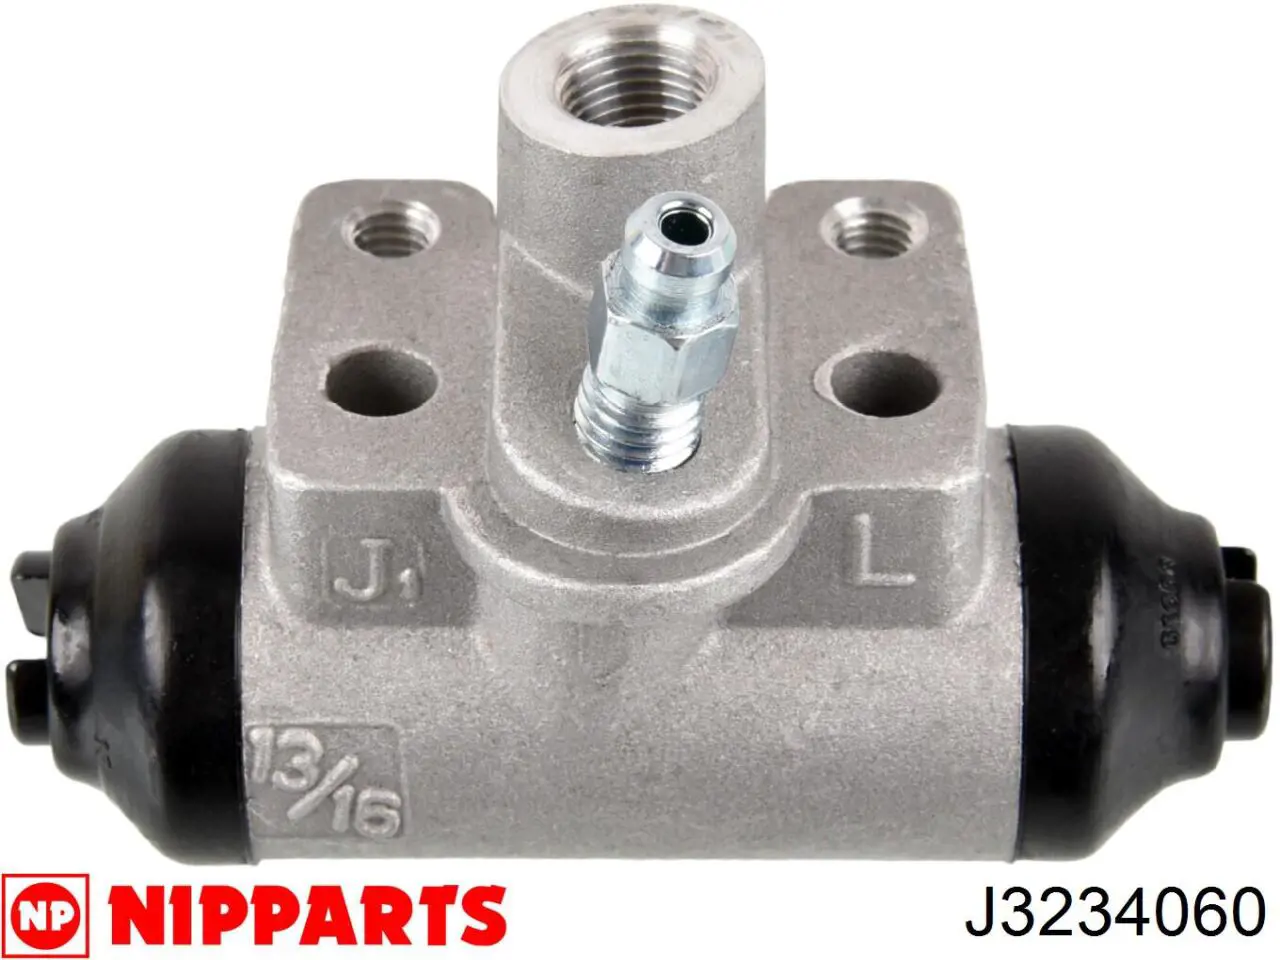 J3234060 Nipparts cilindro de freno de rueda trasero